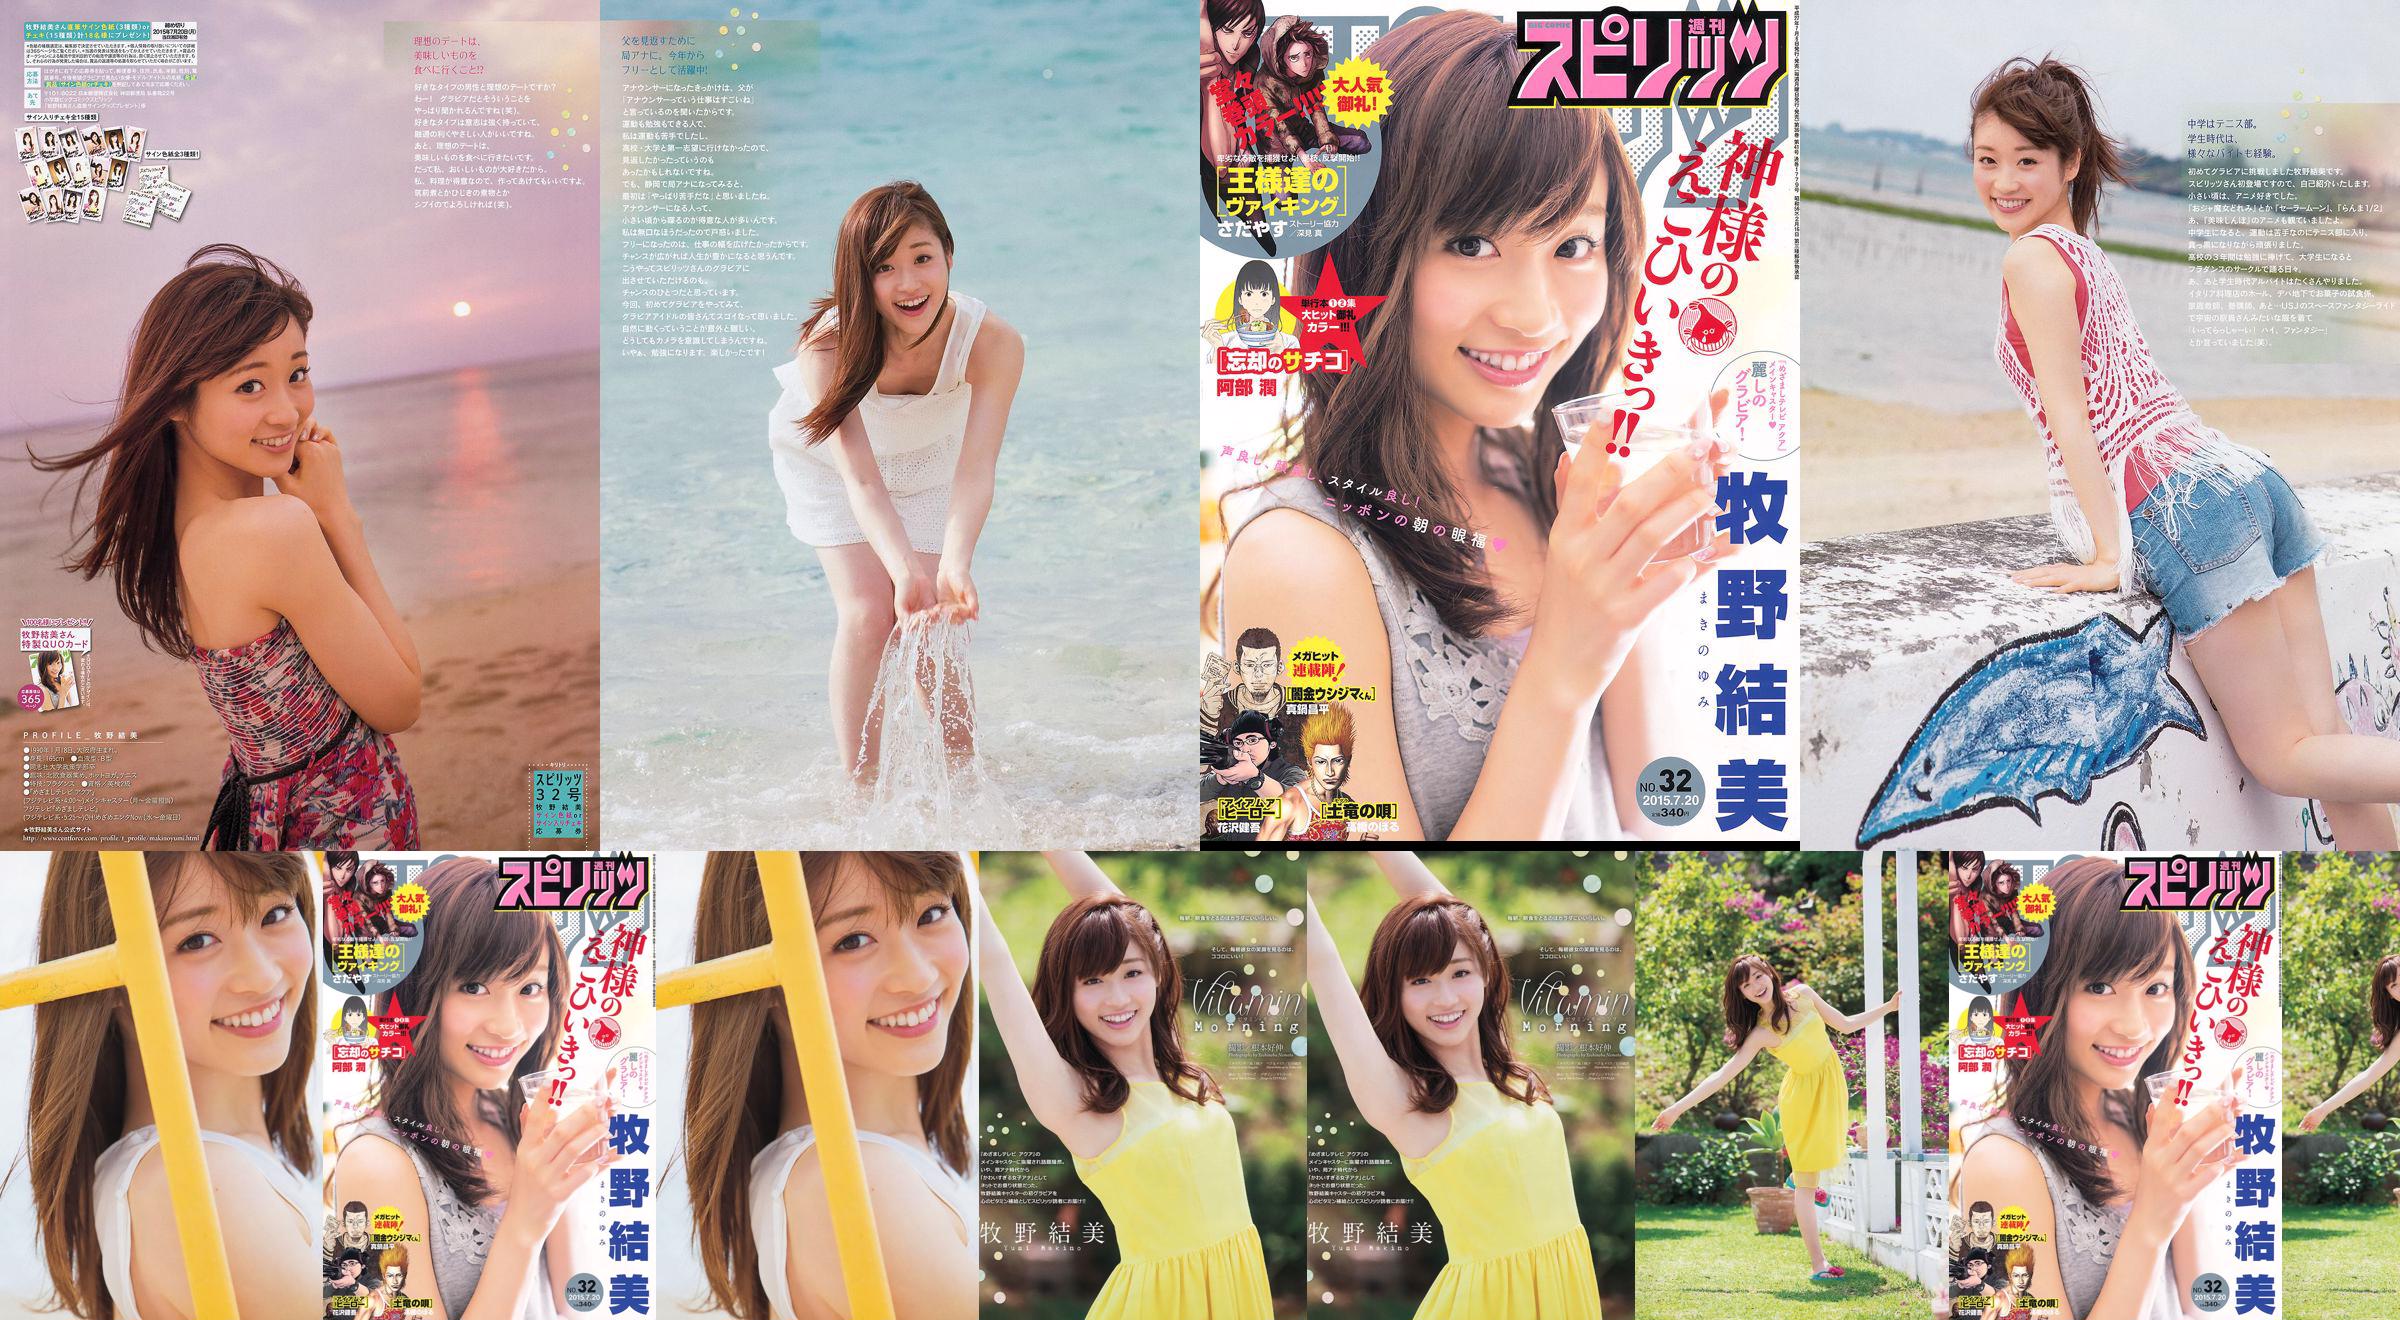 [Weekly Big Comic Spirits] Yumi Makino 2015 No.32 Photo Magazine No.831439 Pagina 2